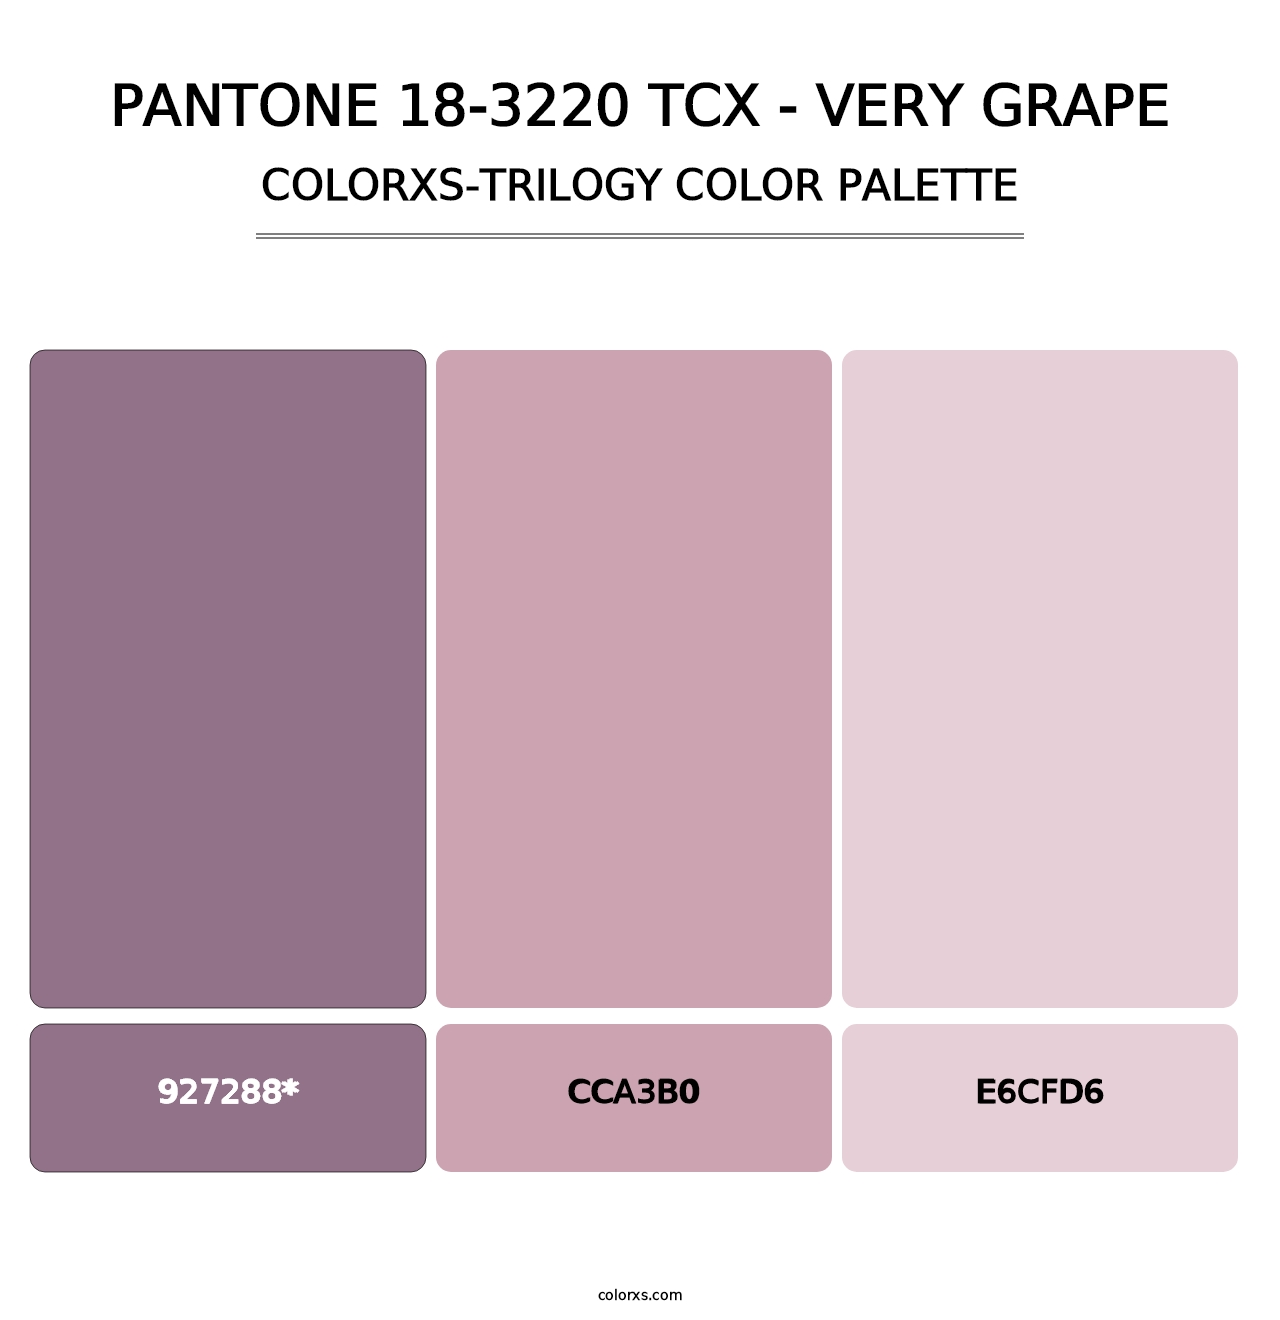 PANTONE 18-3220 TCX - Very Grape - Colorxs Trilogy Palette